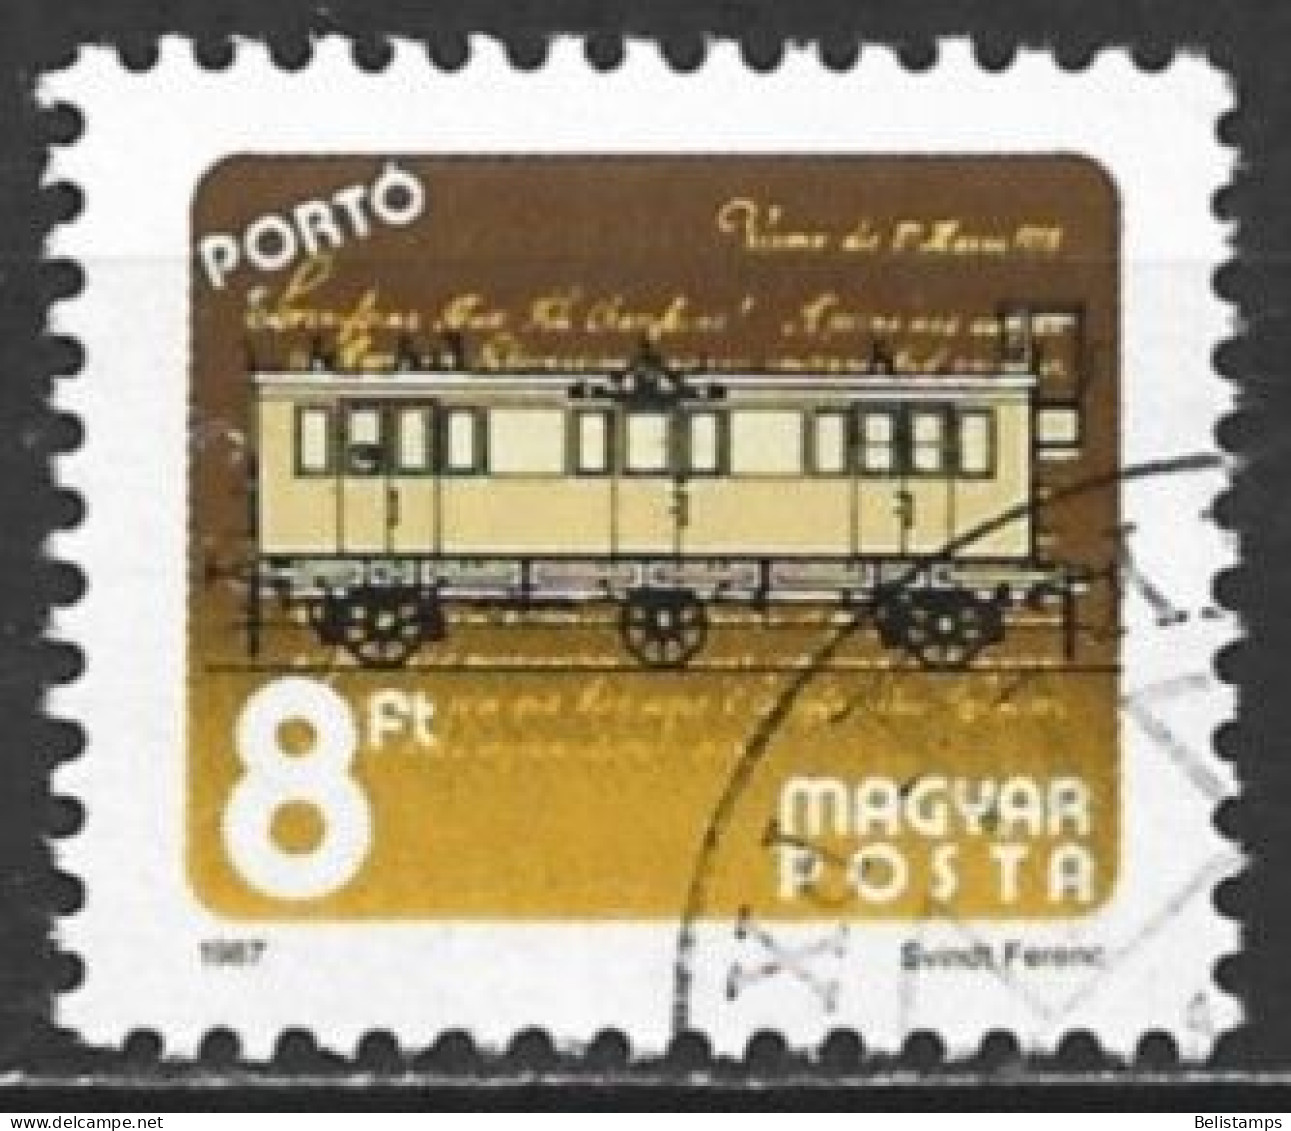 Hungary 1987. Scott #J279 (U) Railroad Mail Car - Postage Due